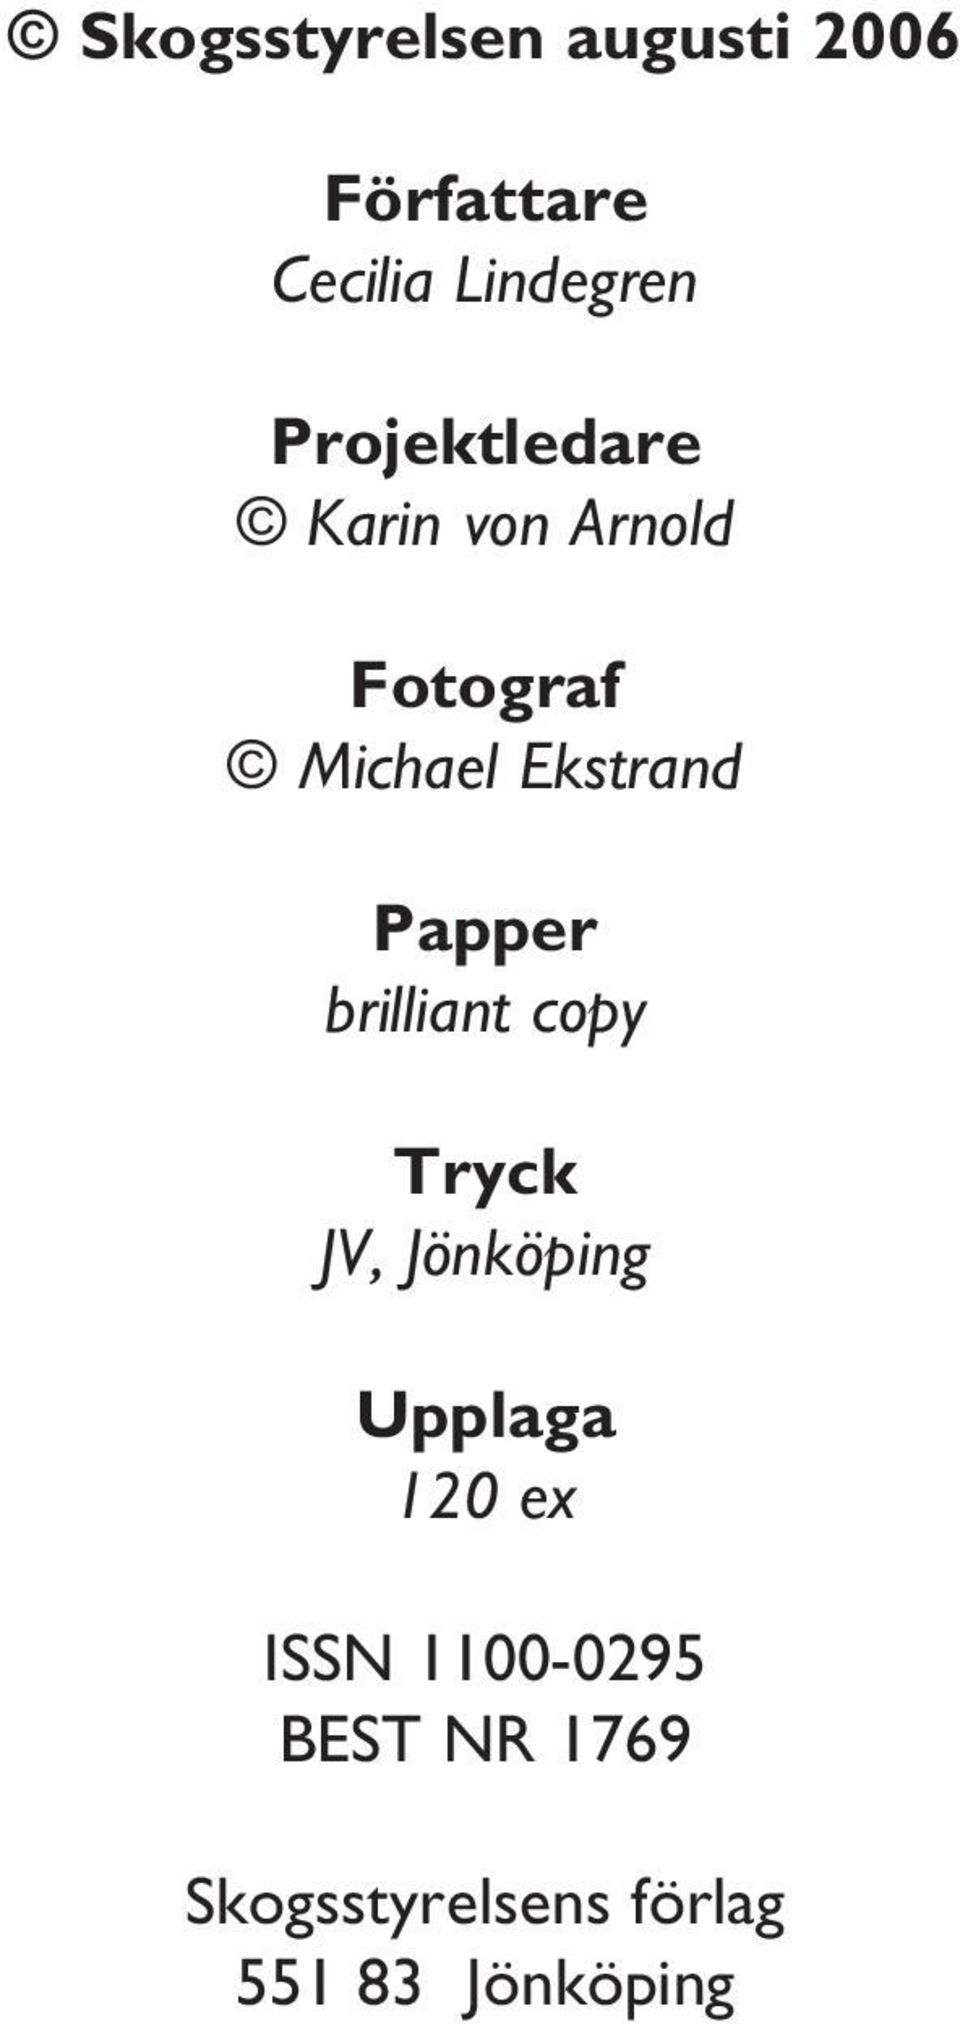 Papper brilliant copy Tryck JV, Jönköping Upplaga 120 ex